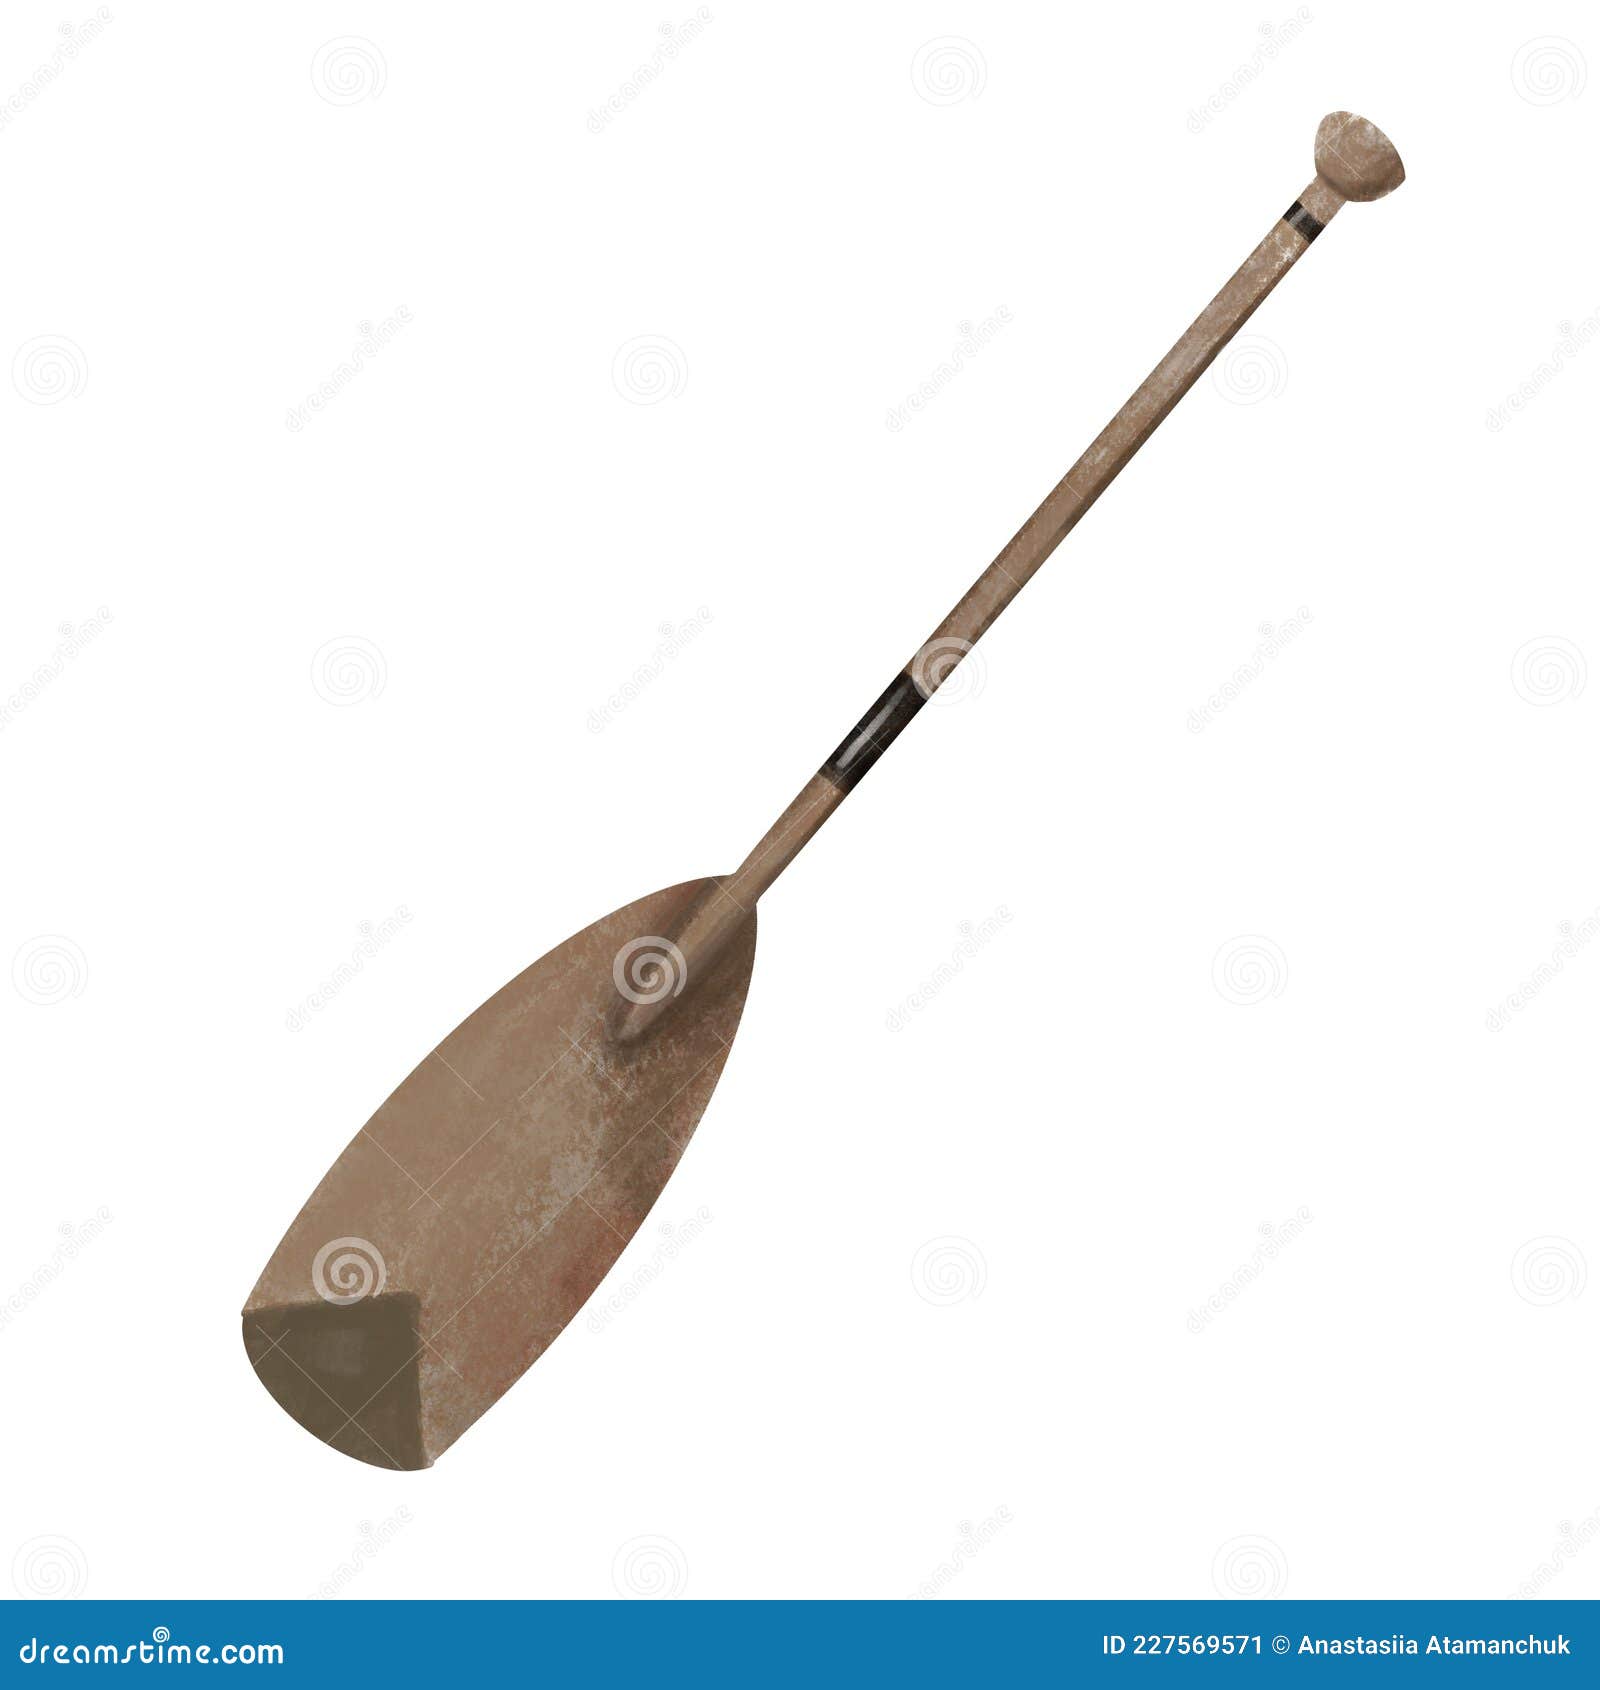 watercolor oar , traditional wooden single-bladed canoe paddle watercolor . one object, blank